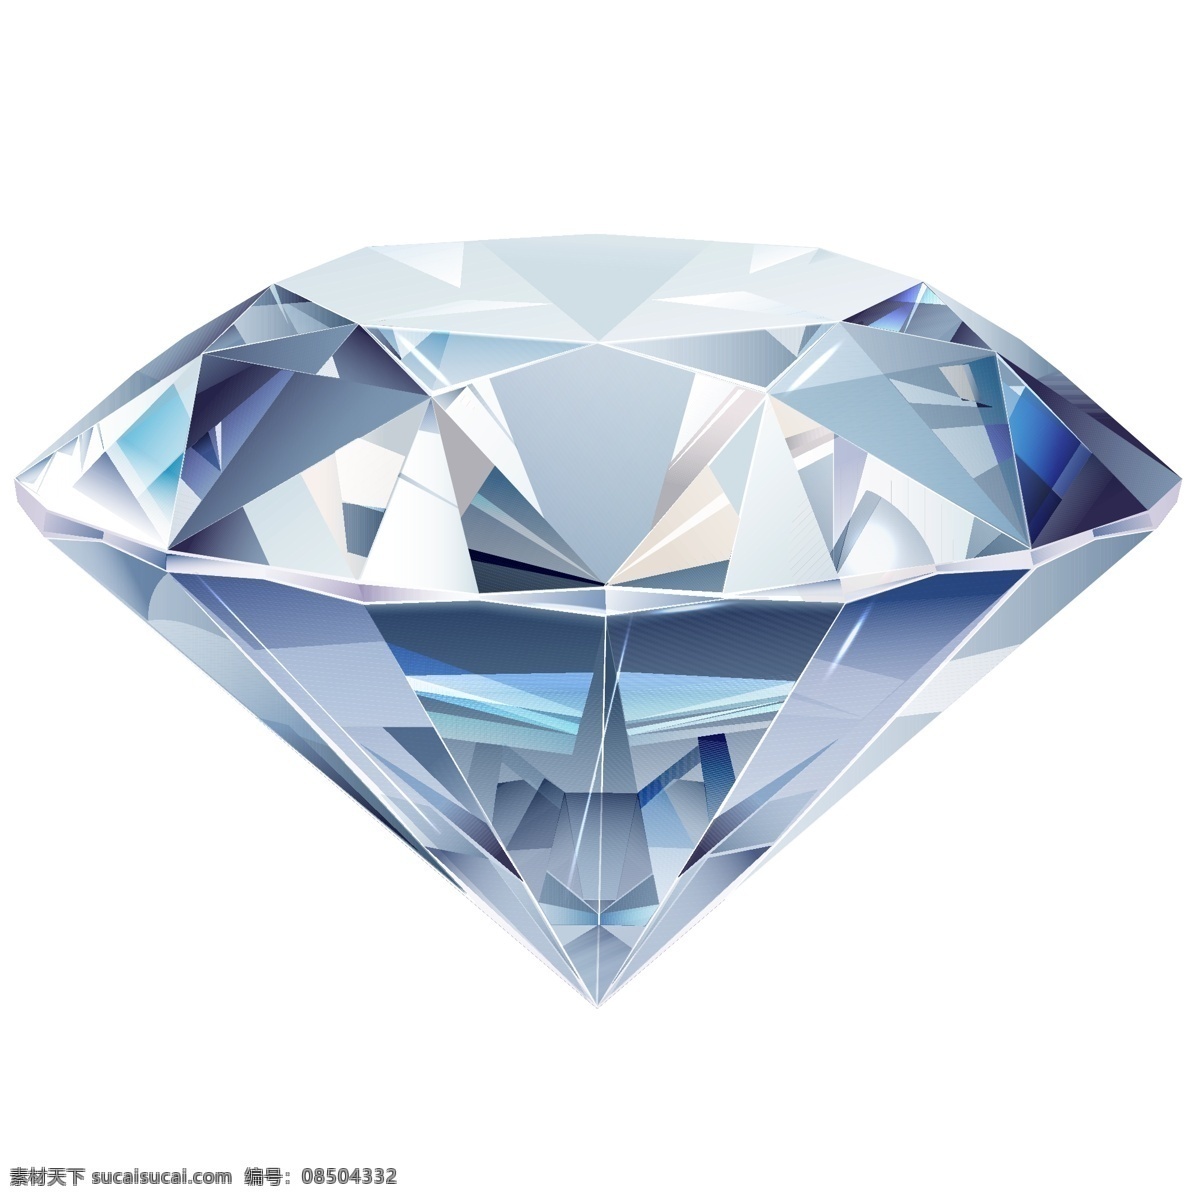 金刚石矢量图 金刚石 钻石矢量图 矢量钻石 钻石矢量文件 矢量钻石文件